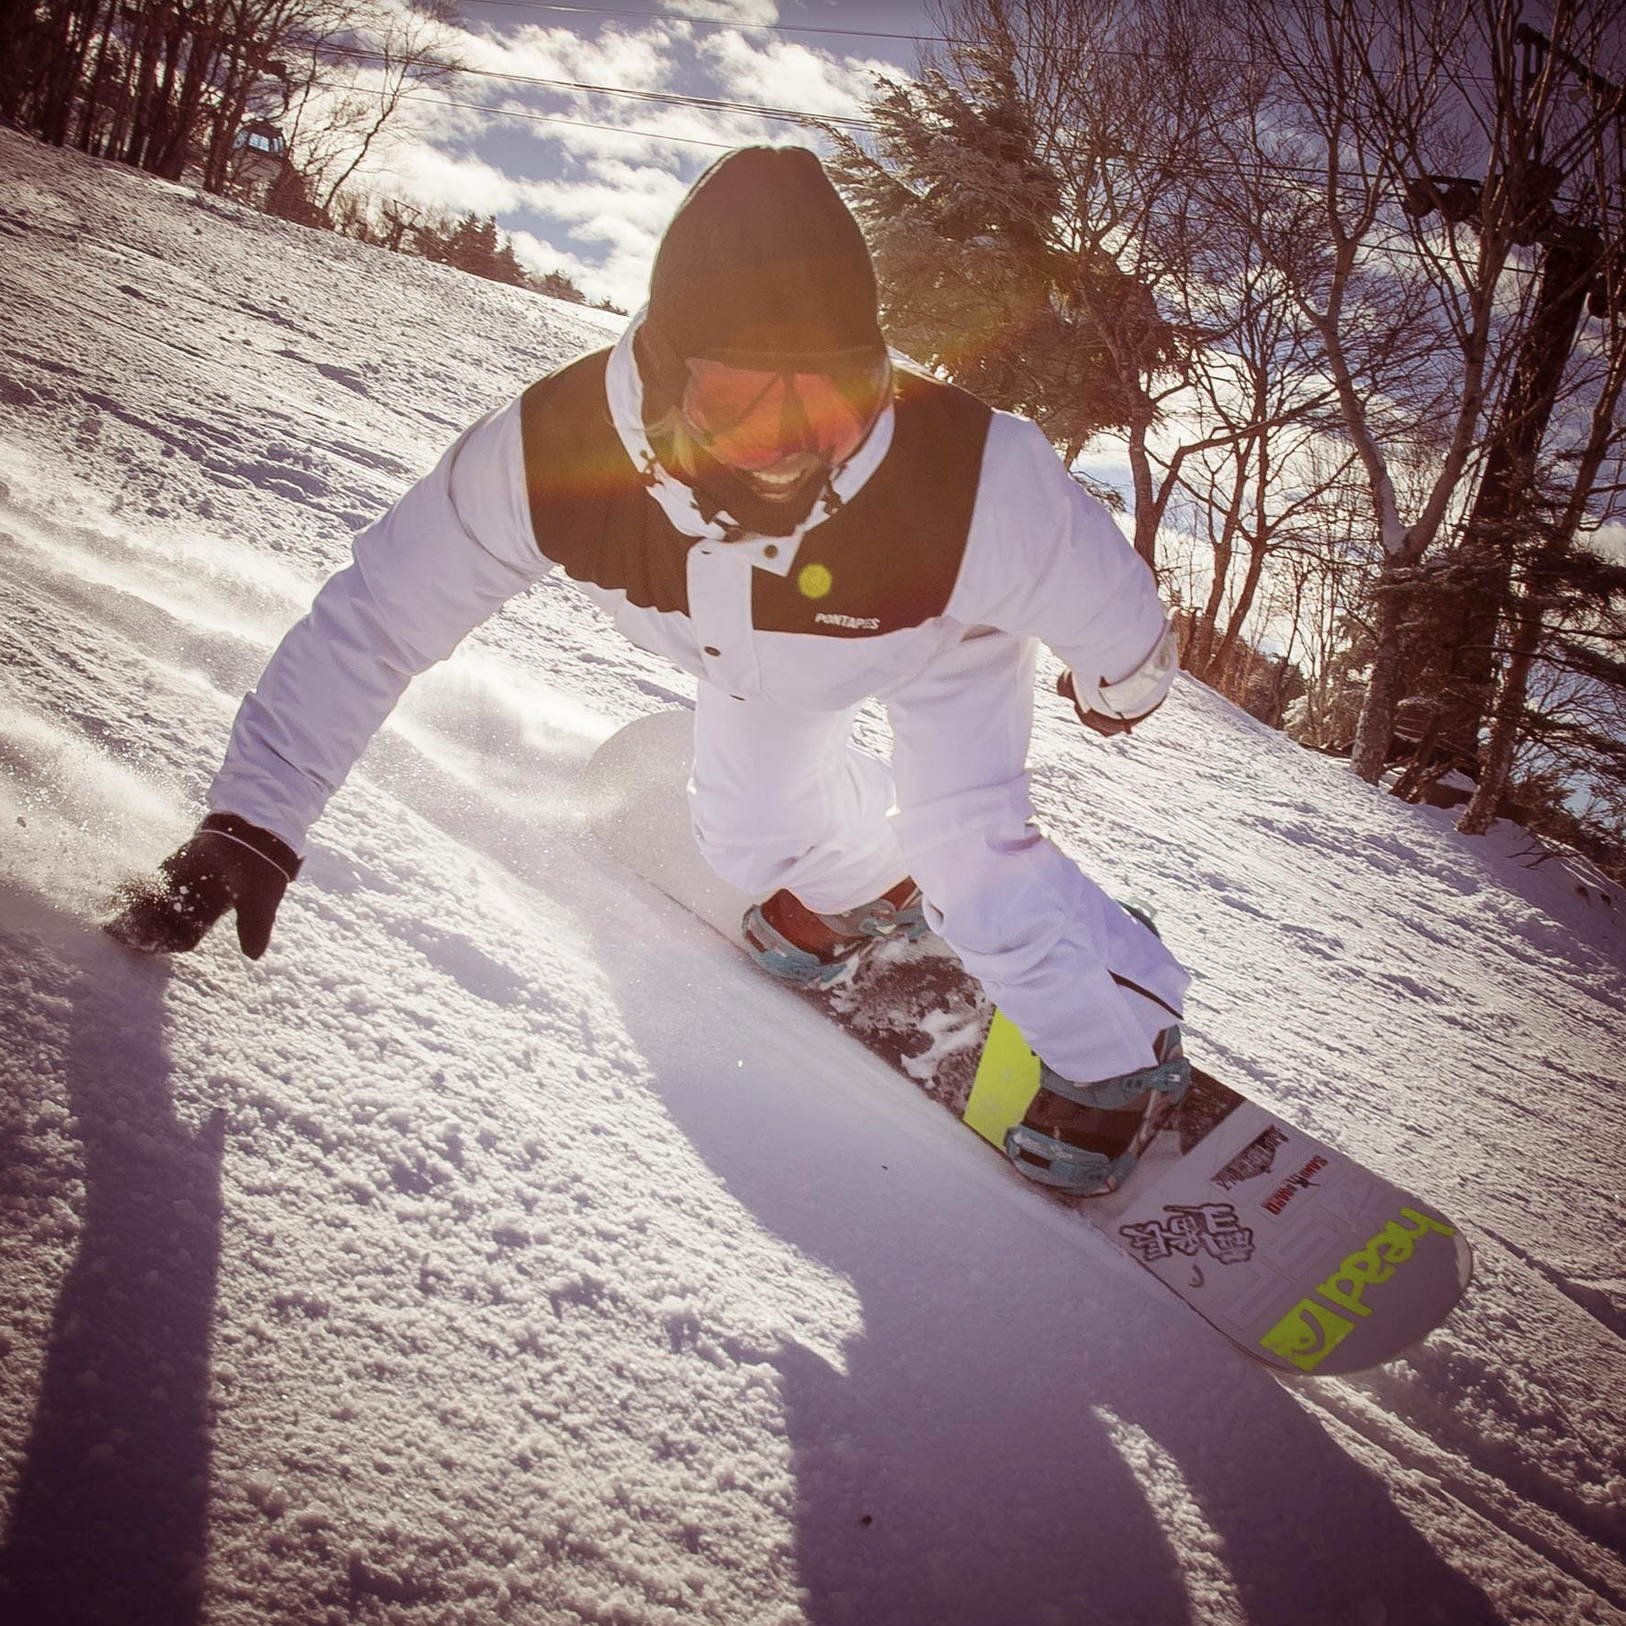 18-19モデル head Snowboards「THE DAY」徹底解説 – USP JAPAN site